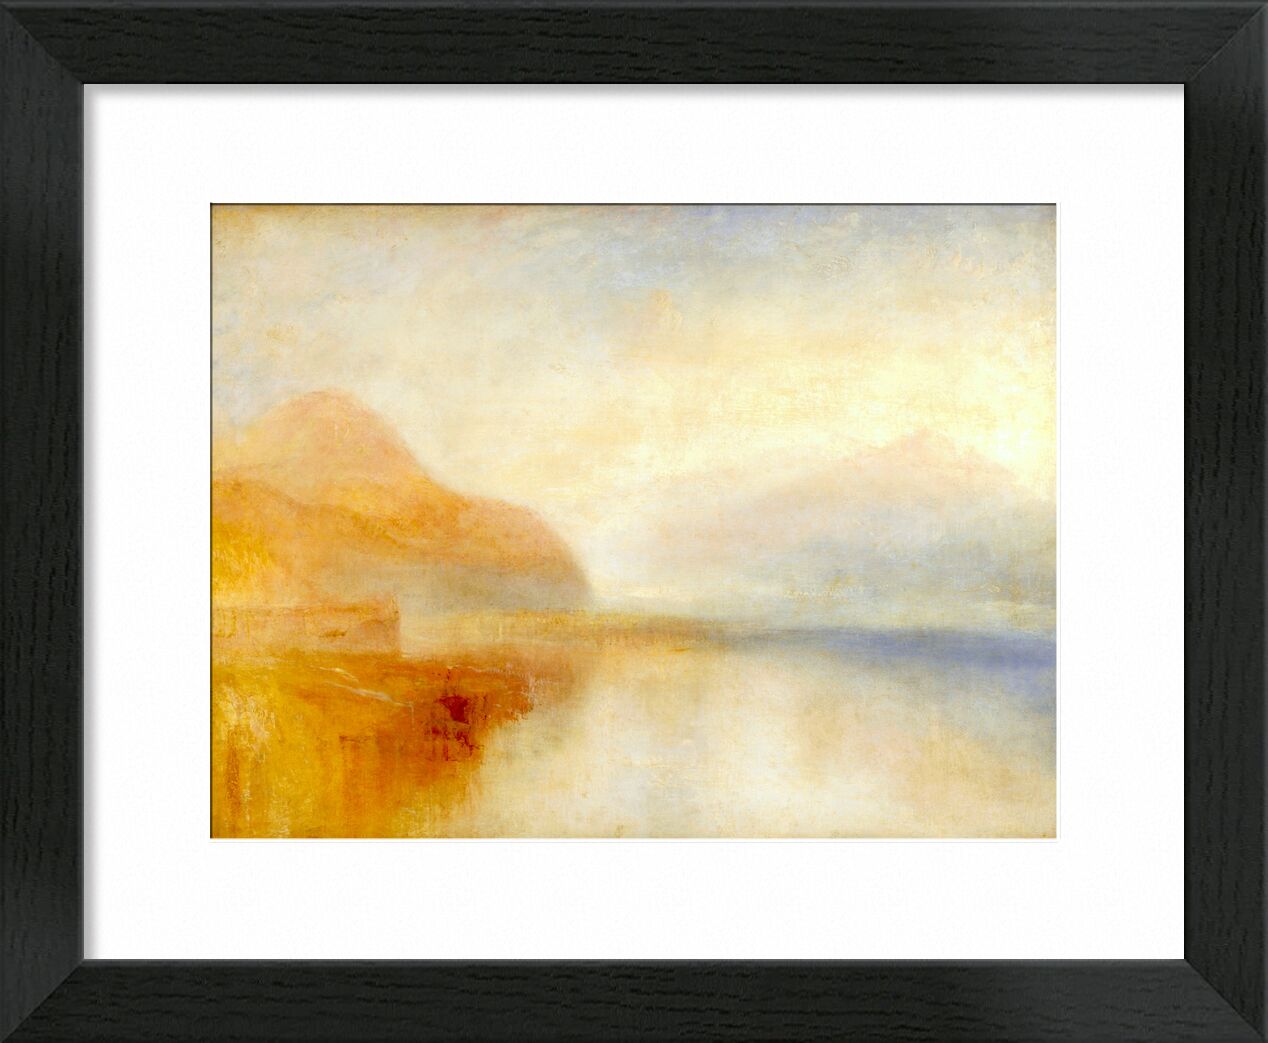 Inverary Pier, Loch Fyne, Morning - TURNER desde Bellas artes, Prodi Art, TORNERO, quai, Puerto, montañas, mar, cielo